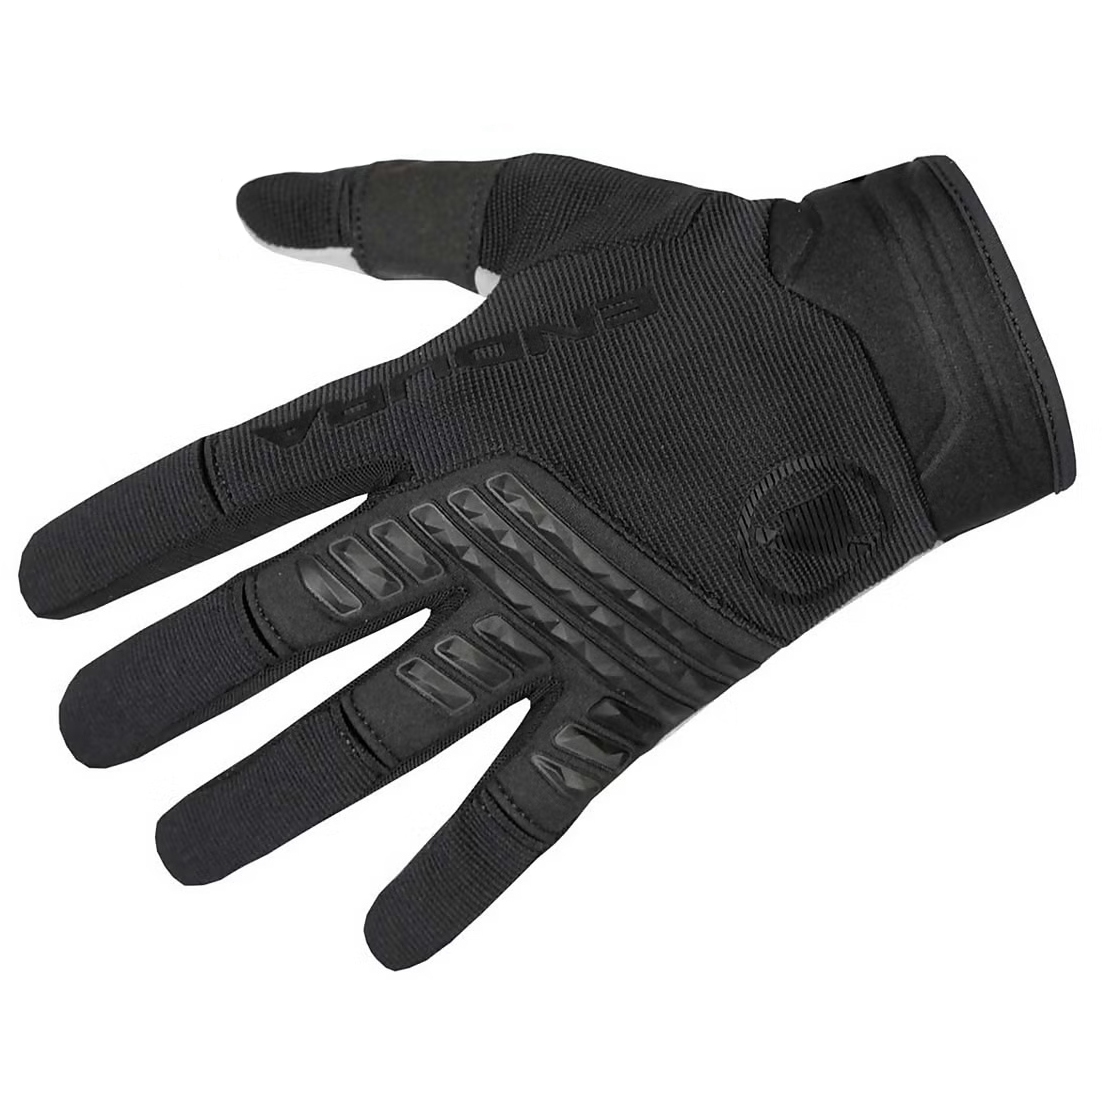 Produktbild von Endura SingleTrack Vollfinger-Handschuhe - schwarz